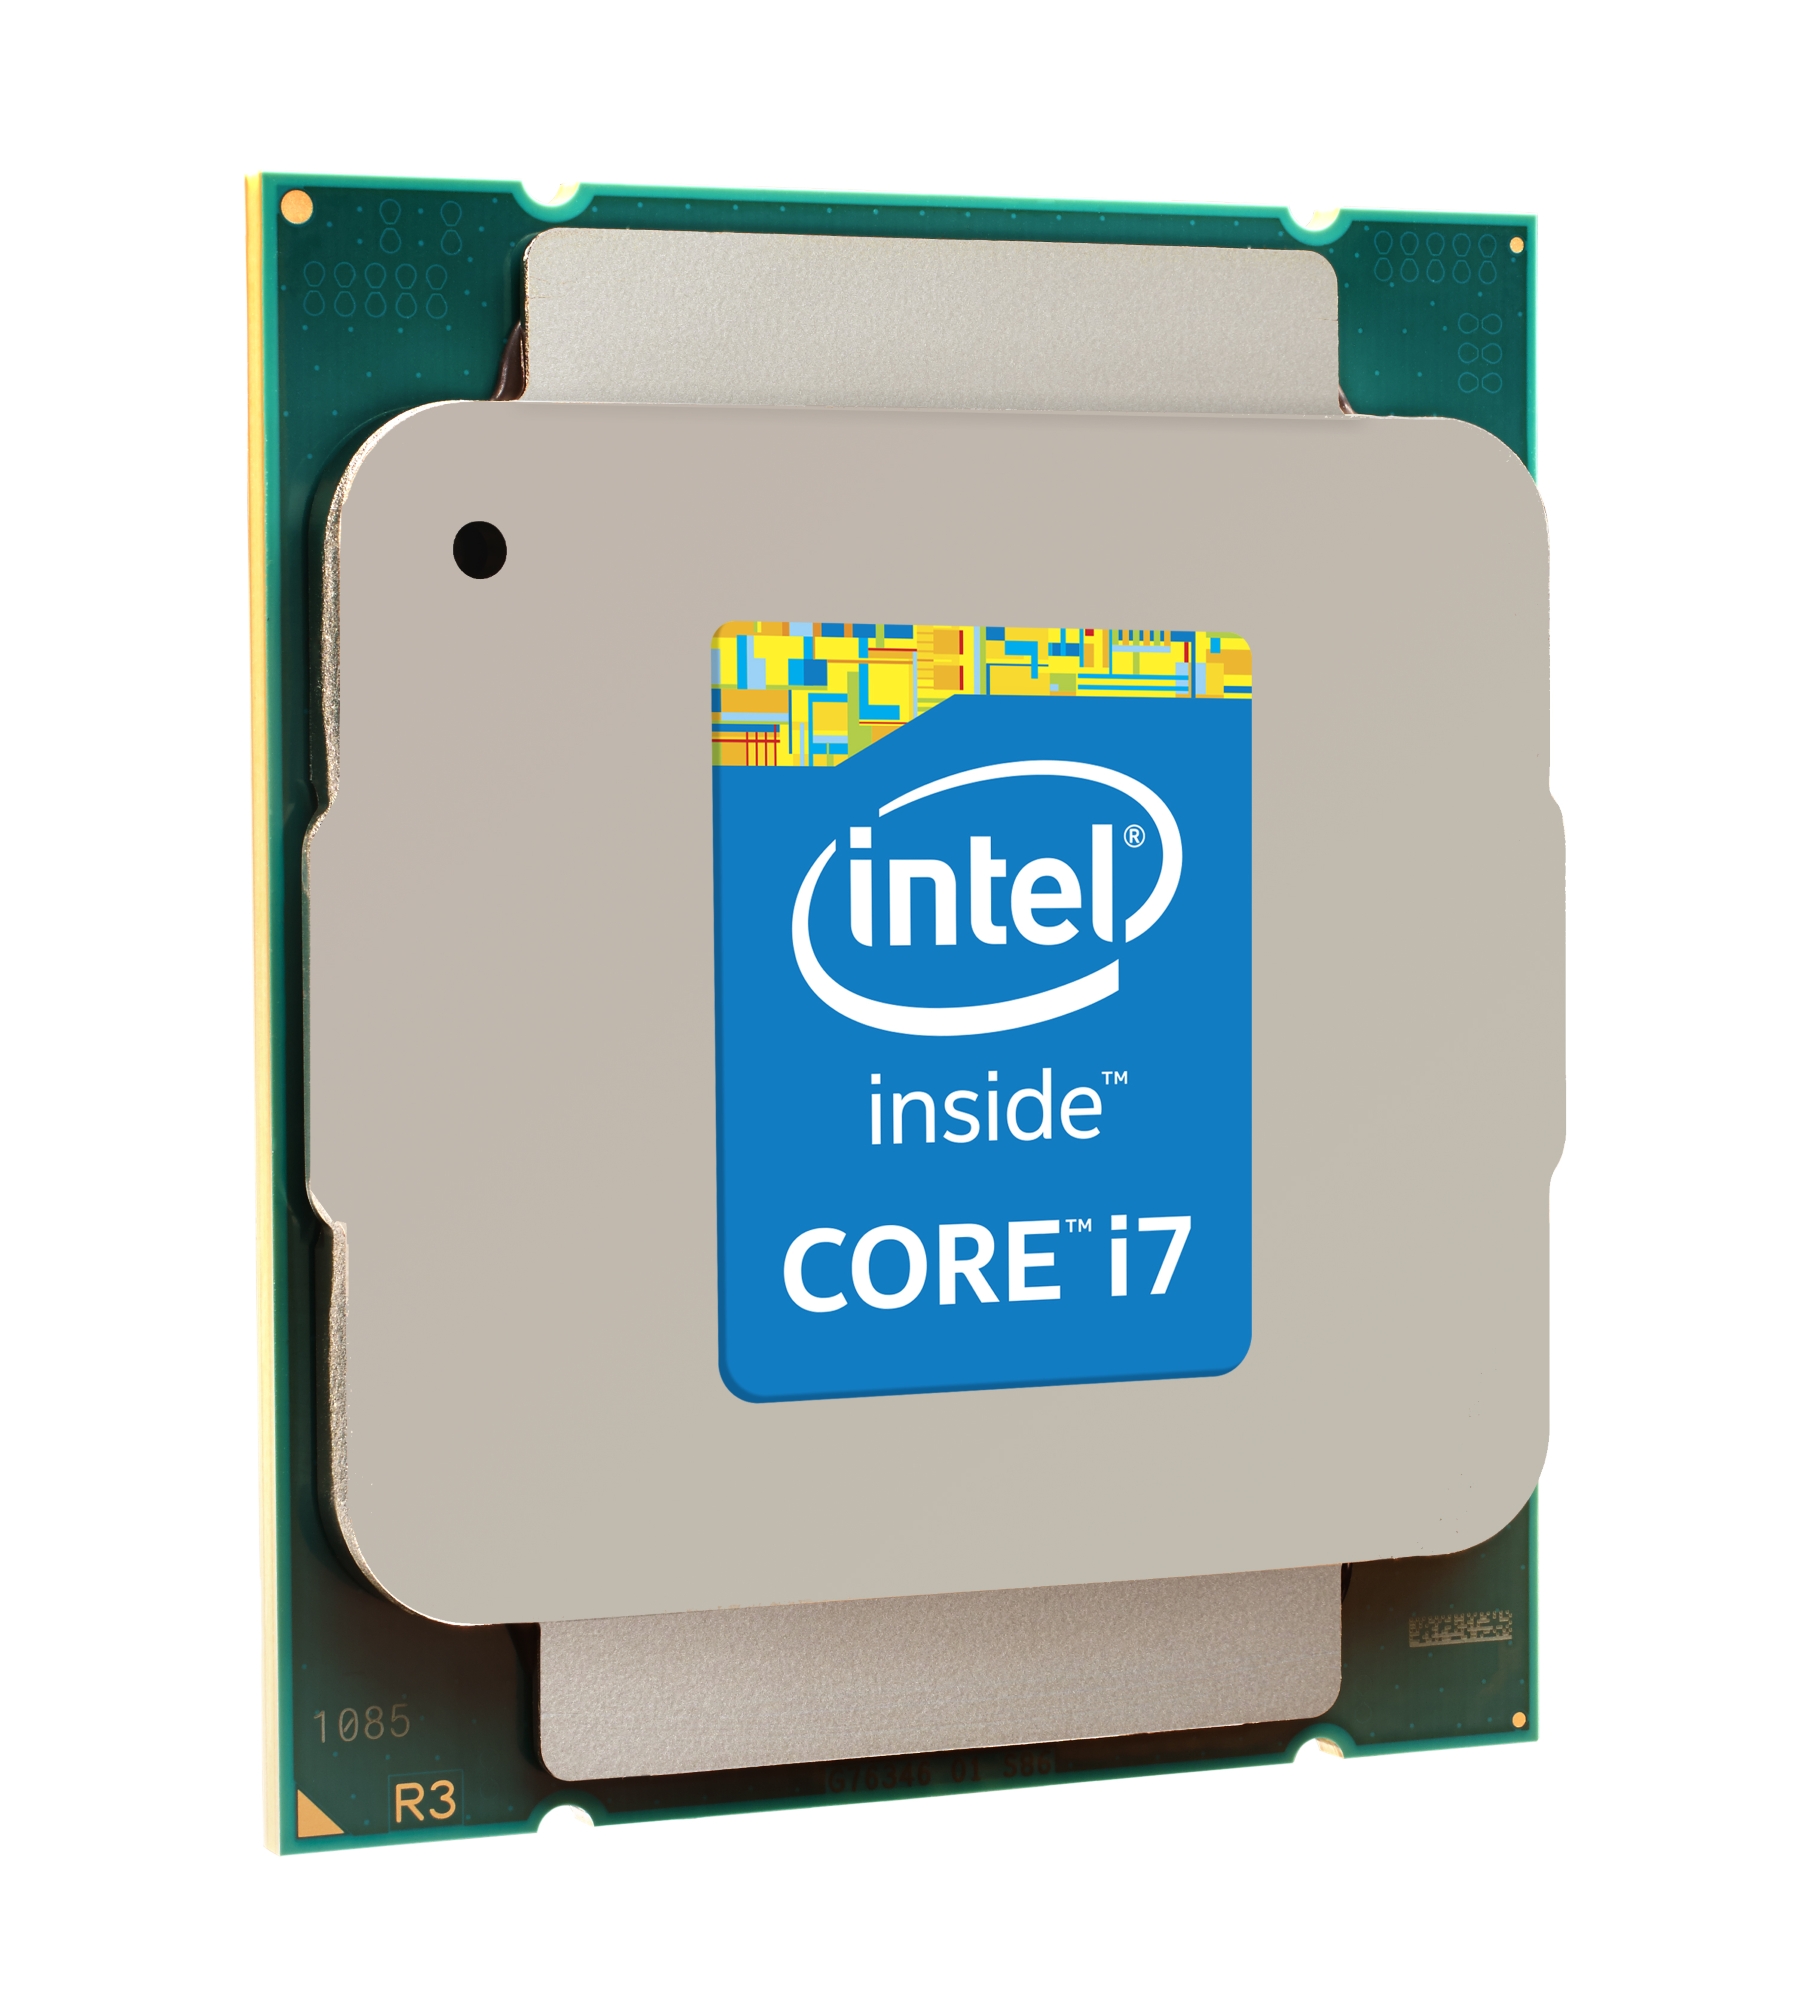 Immagine pubblicata in relazione al seguente contenuto: Intel lancia ufficialmente la piattaforma Haswell-E per desktop high-end | Nome immagine: news21575_Intel-Desktop-Haswell-E_1.jpg